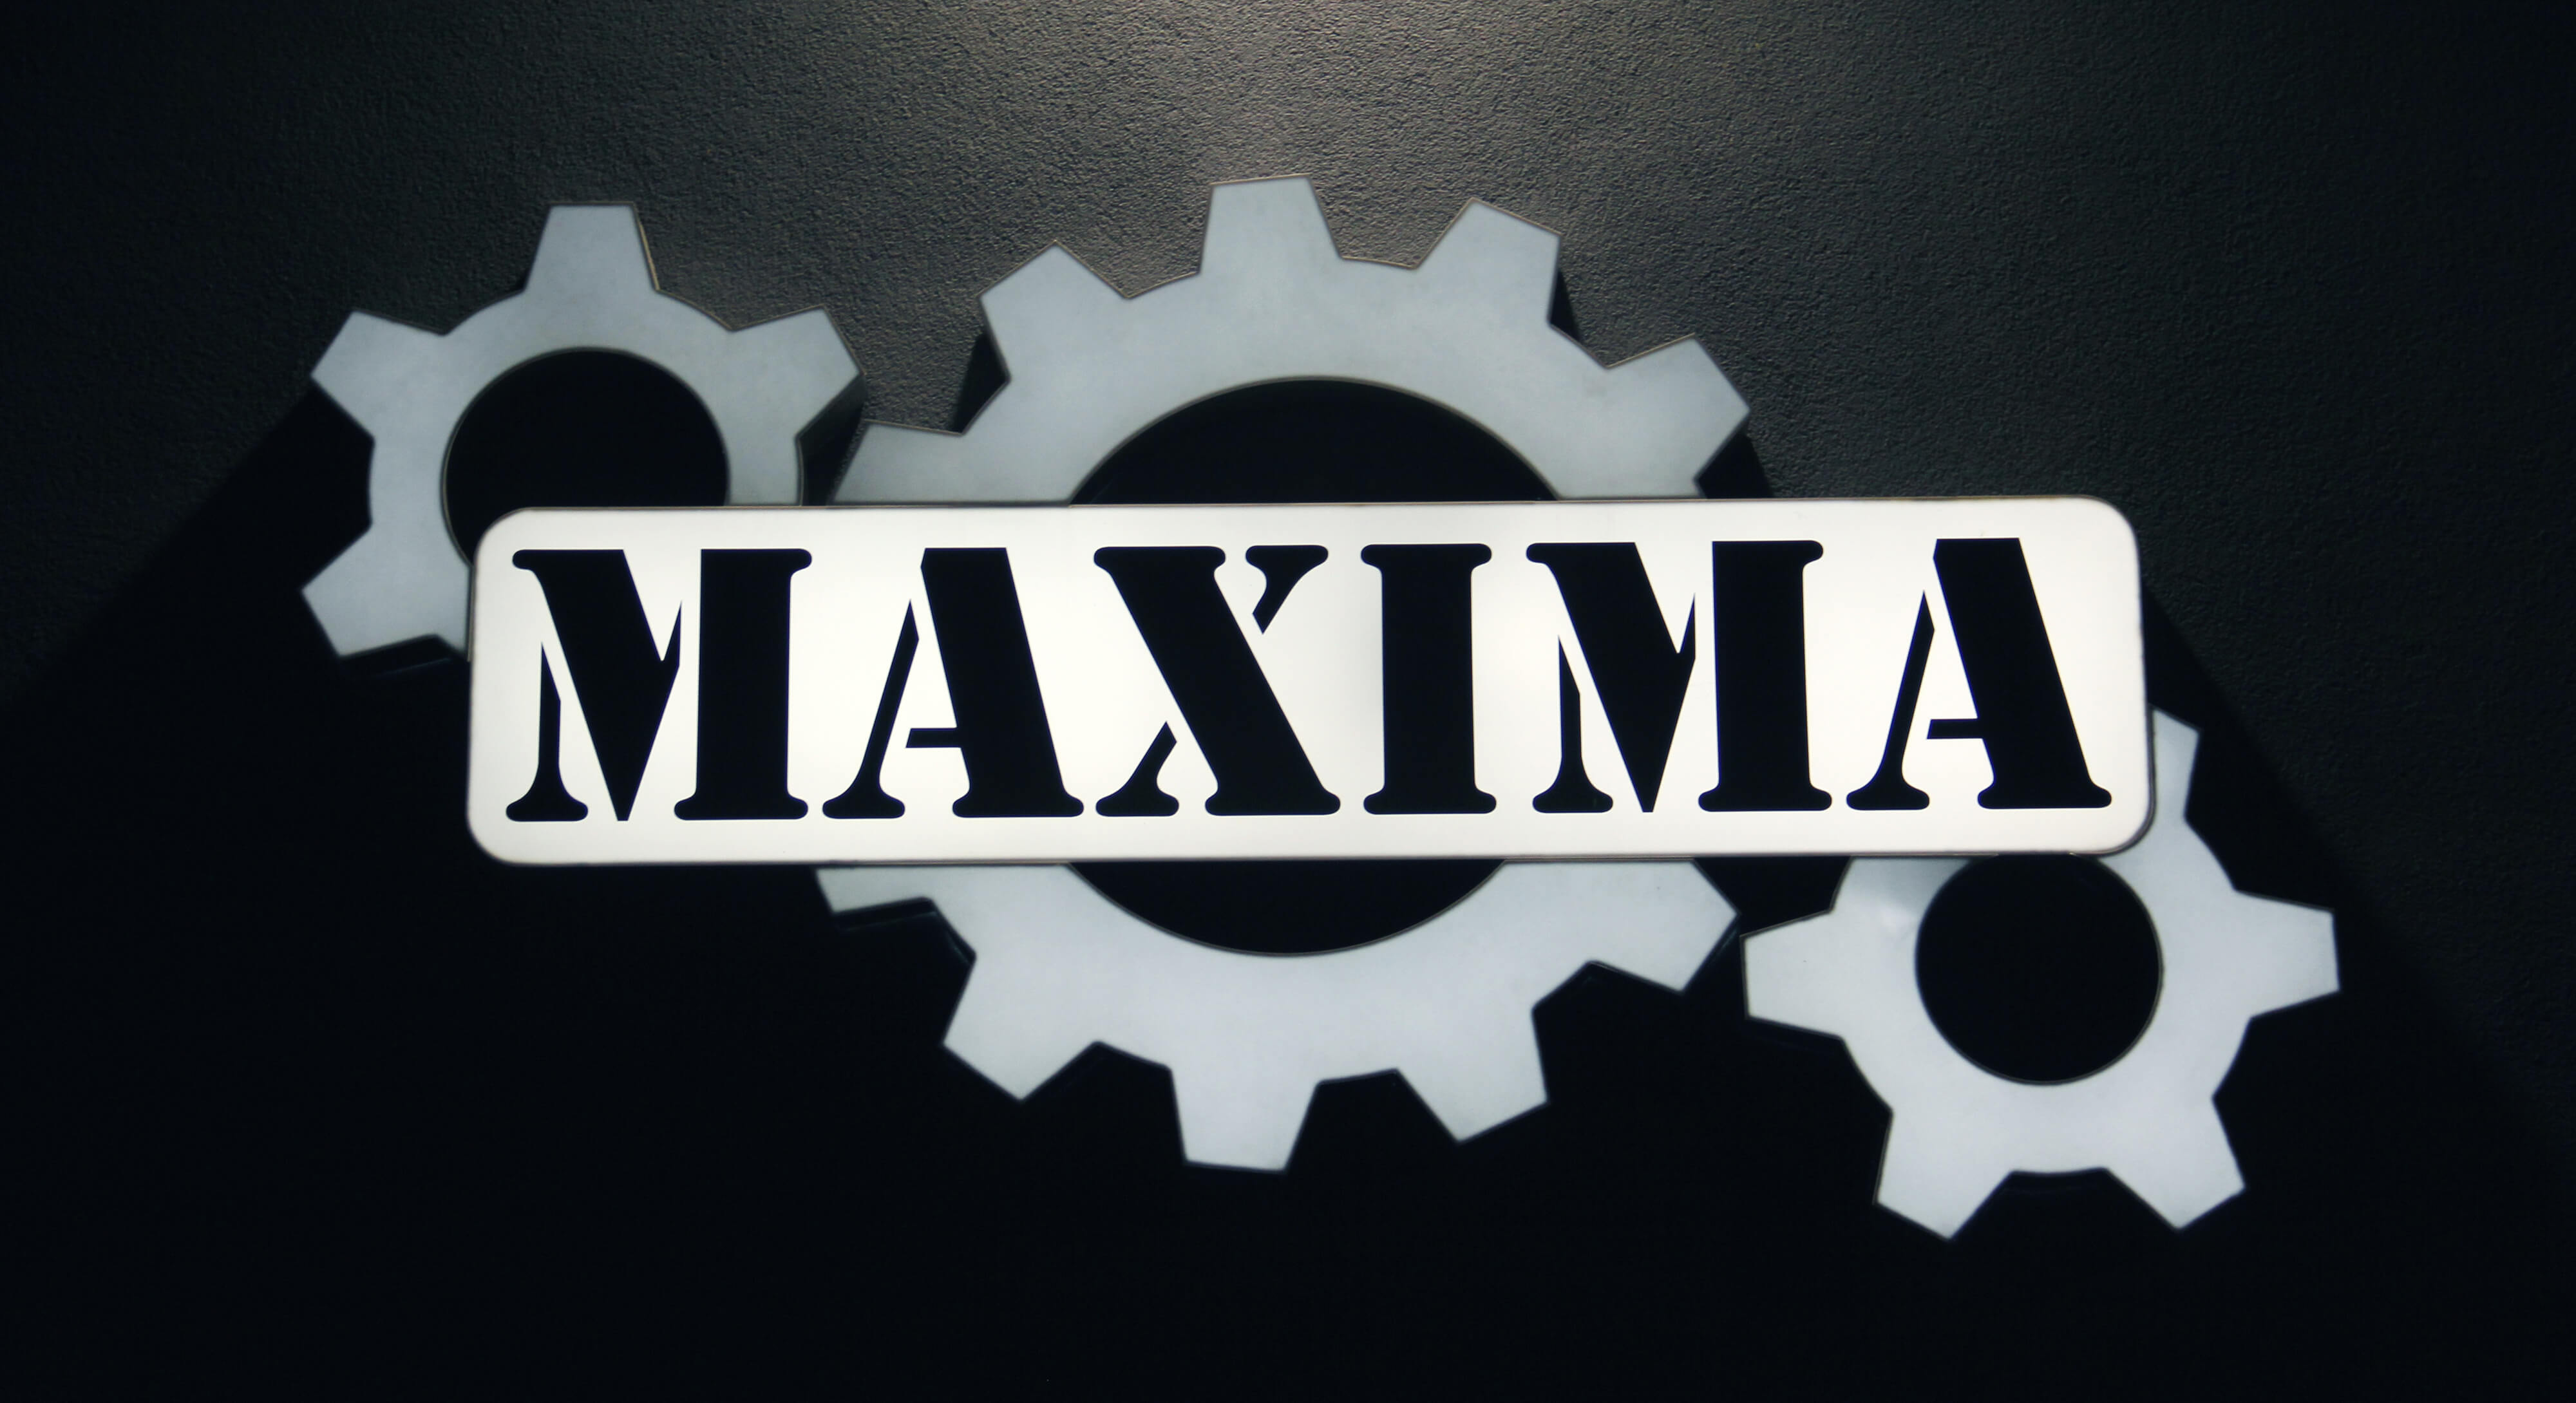 Maxima - Maxima - kaseton led na ścianie z logiem firmy, wykonany z plexiglassu